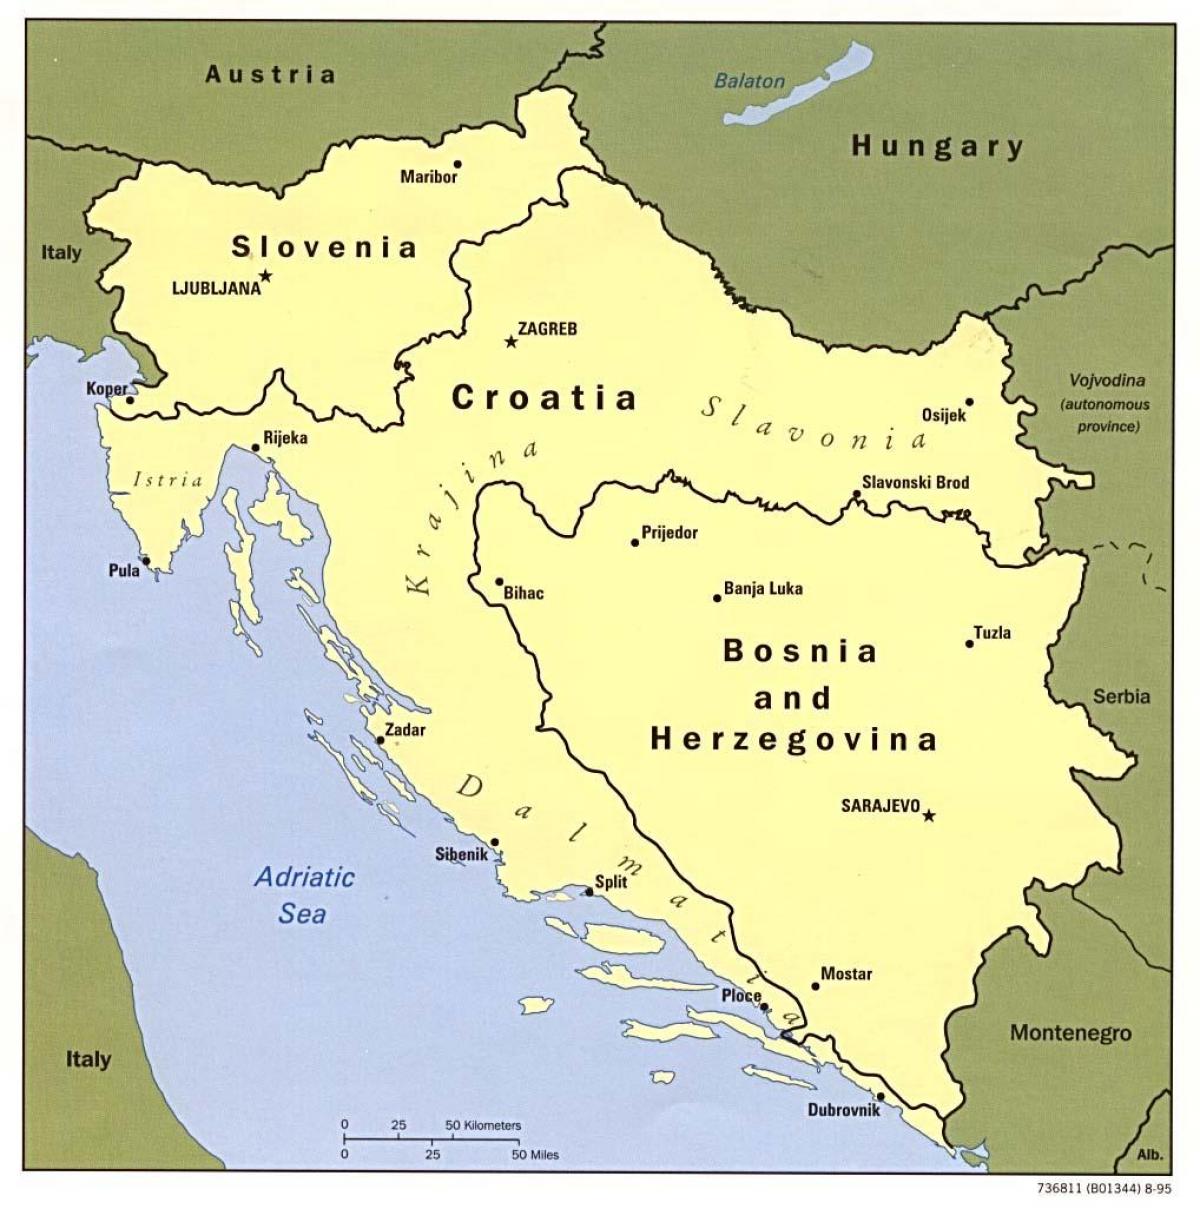 რუკა ბოსნია და ჰერცოგოვინა და მის მიმდებარე ქვეყნებში